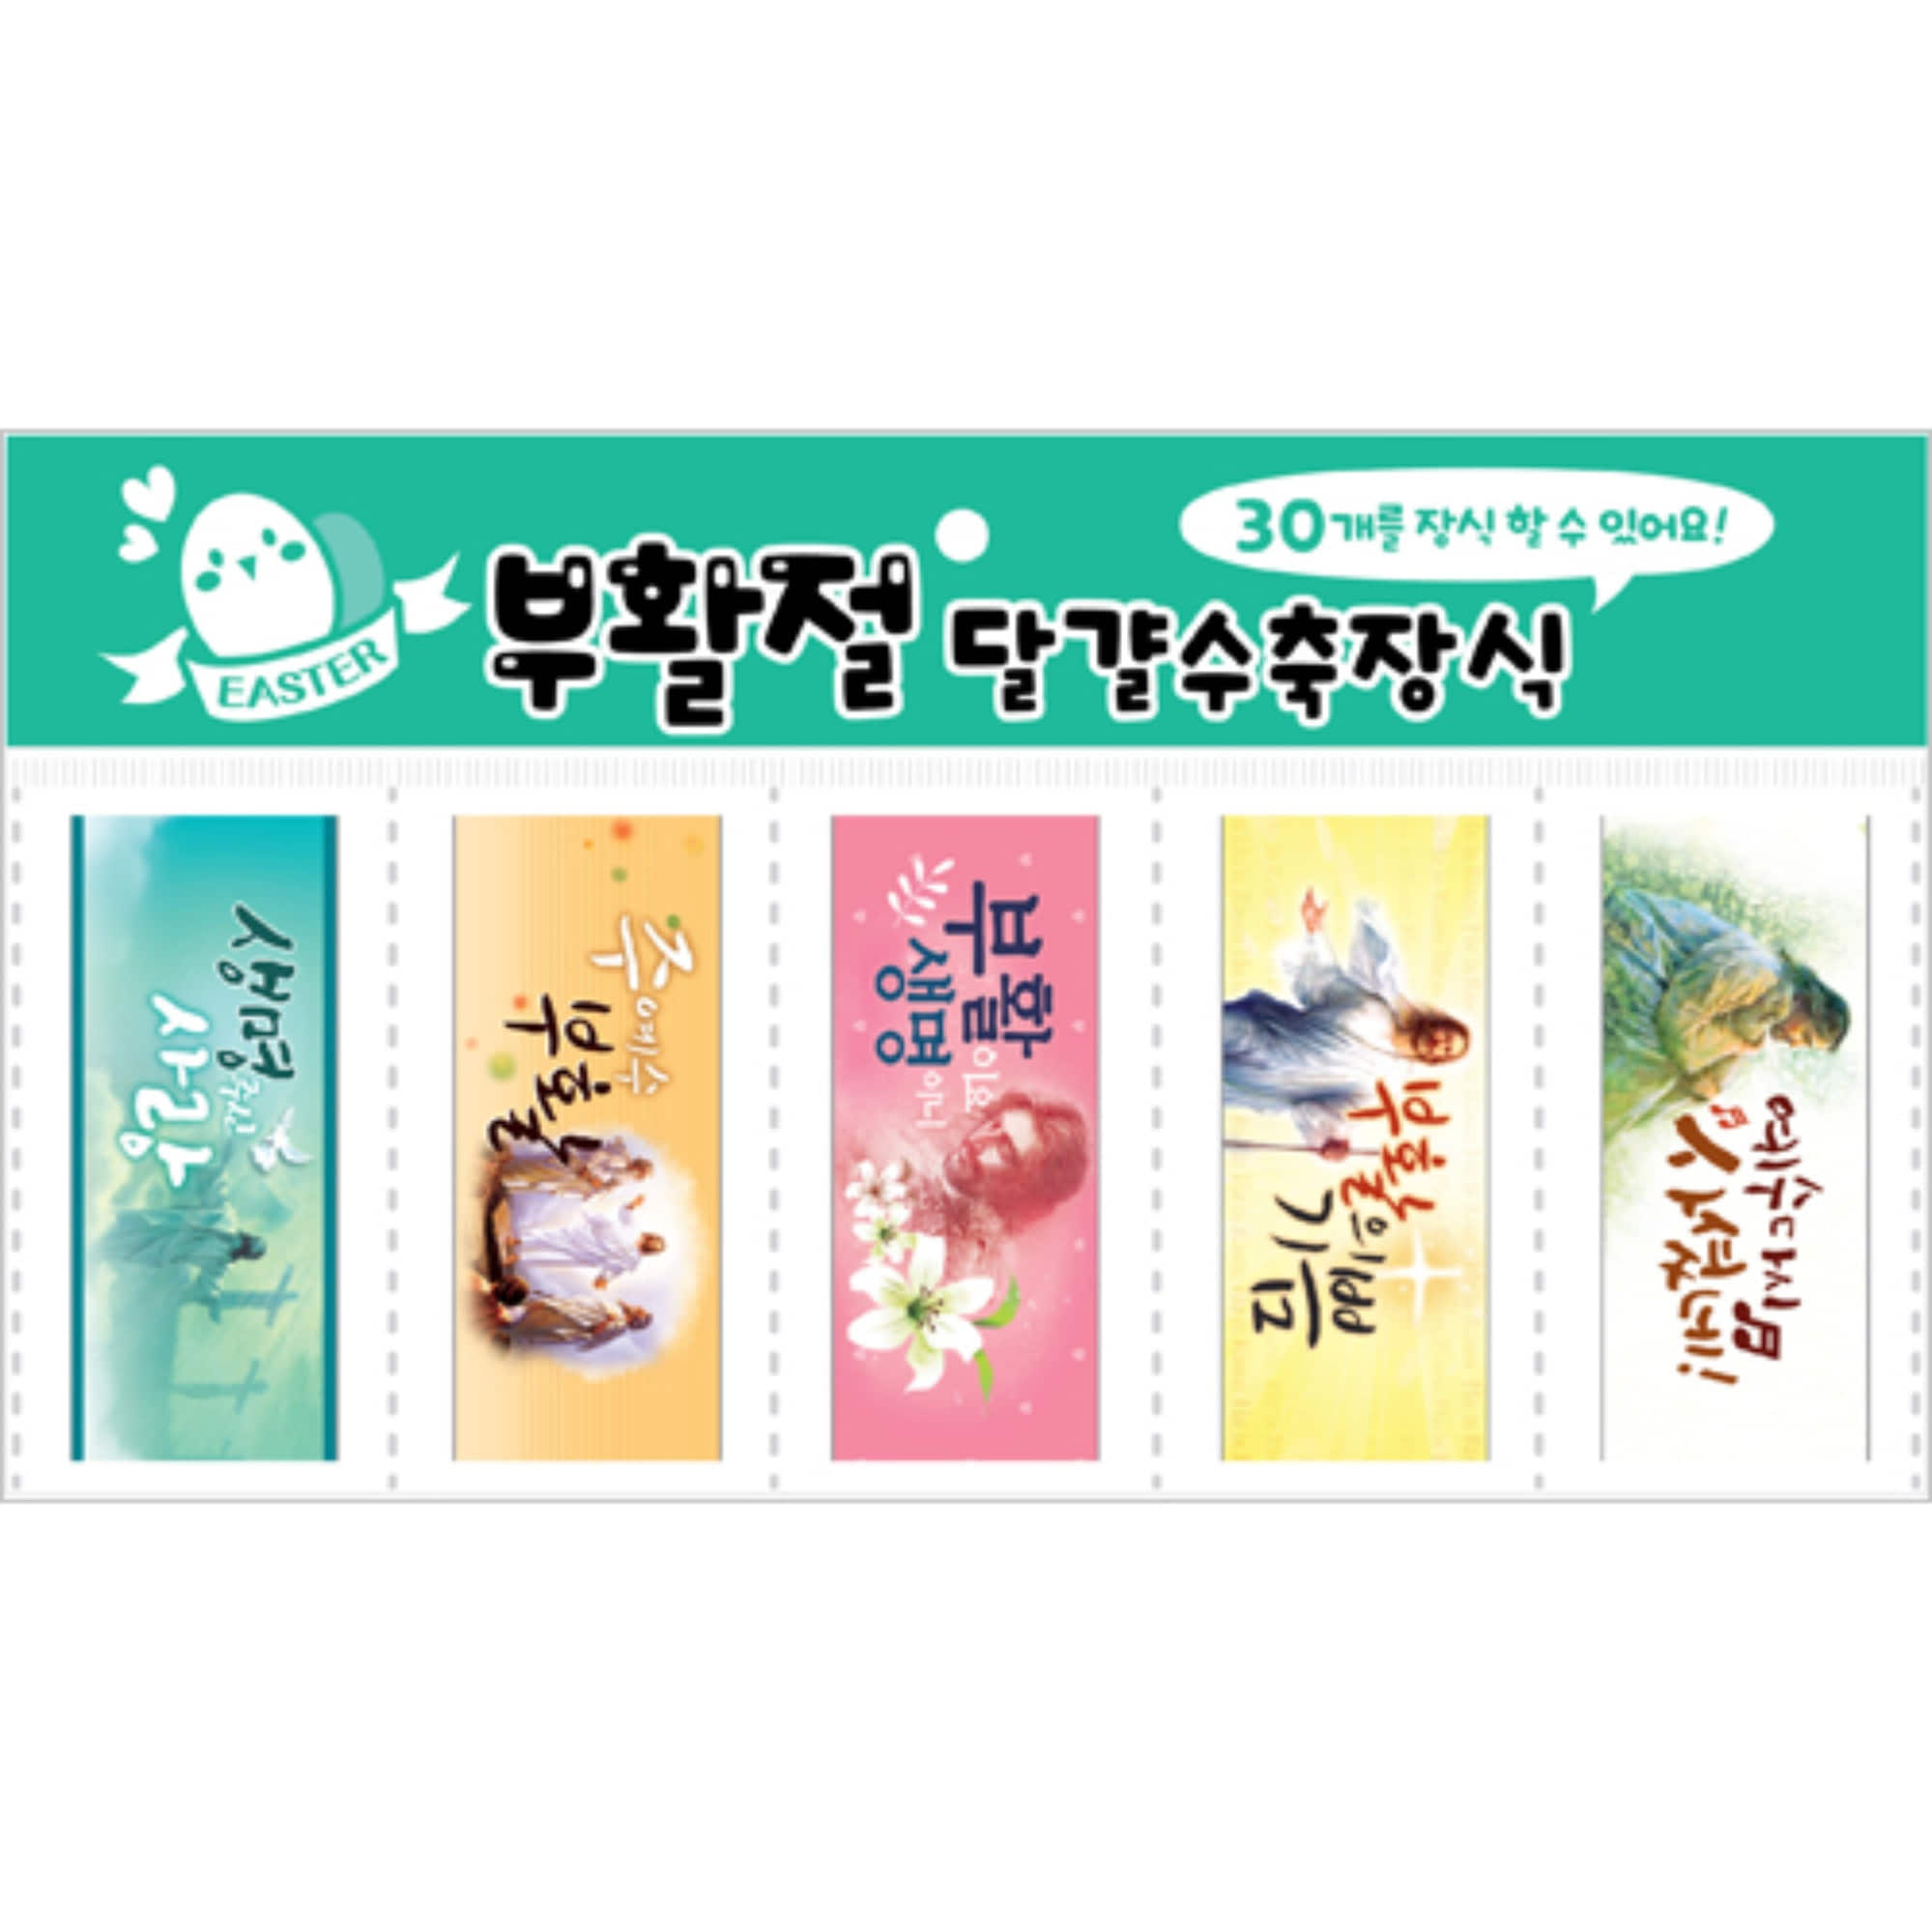 부활 달걀수축필름-성화/민트(30개)